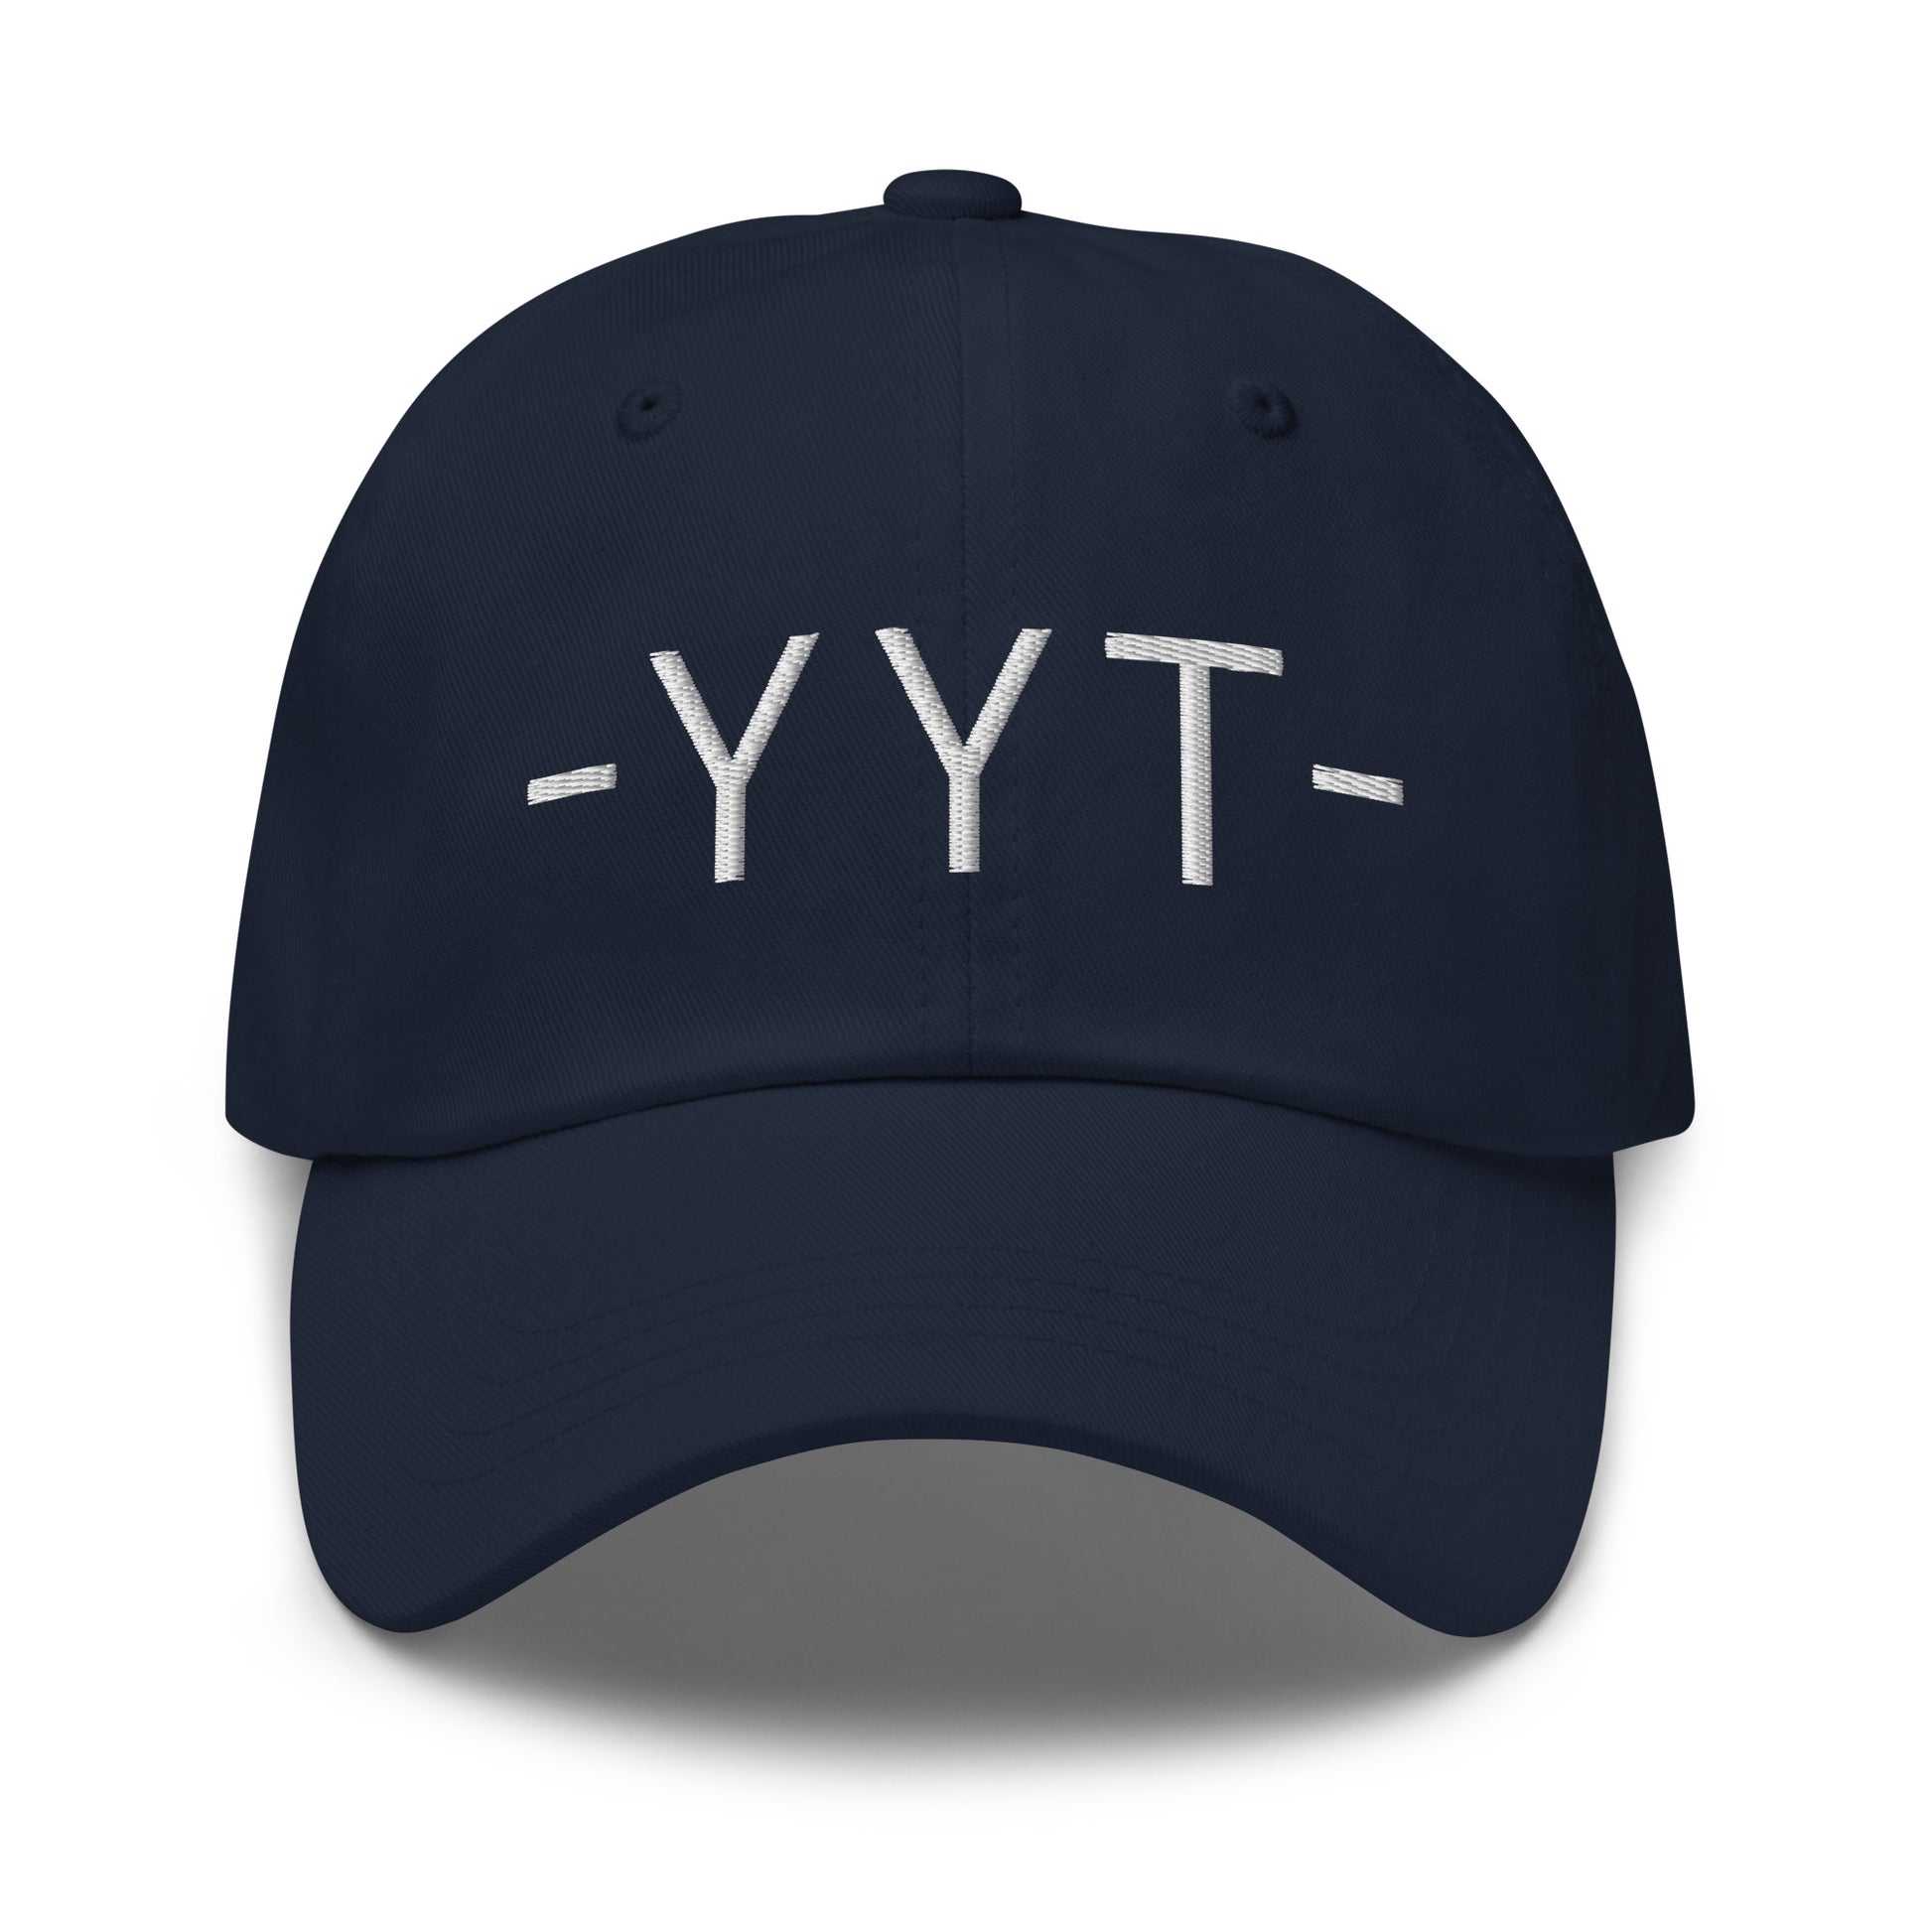 Souvenir Baseball Cap - White • YYT St. John's • YHM Designs - Image 14